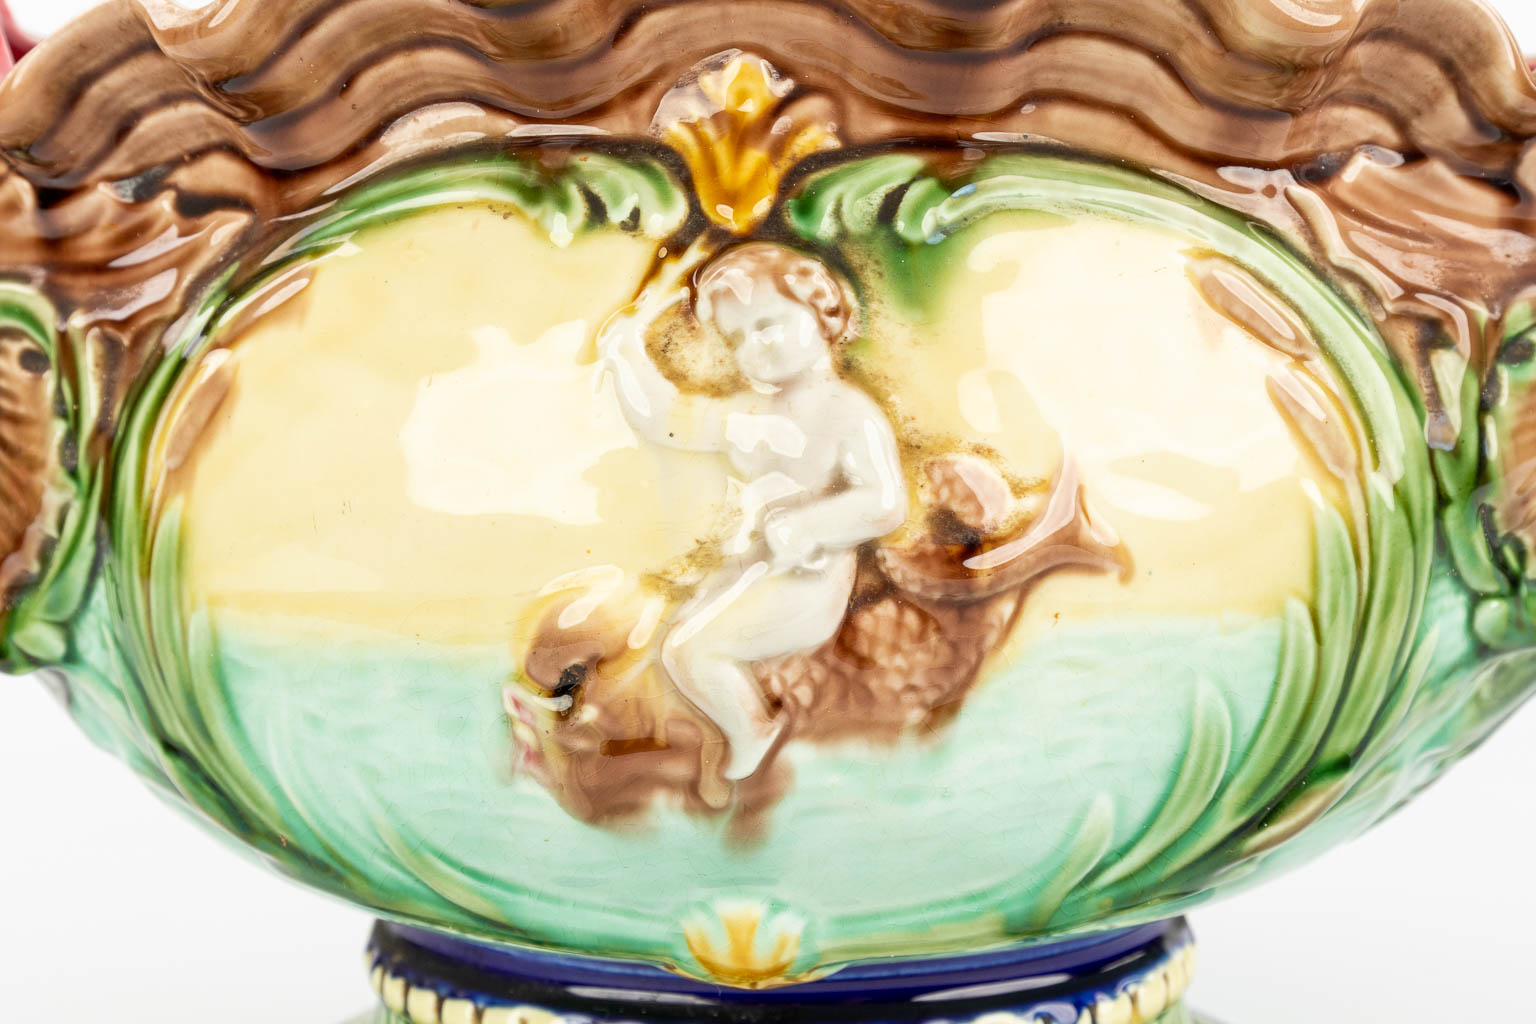 Een cache-pot gemaakt uit geglazuurde faience in art nouveau stijl versierd met vissen en putti. (H:26cm)